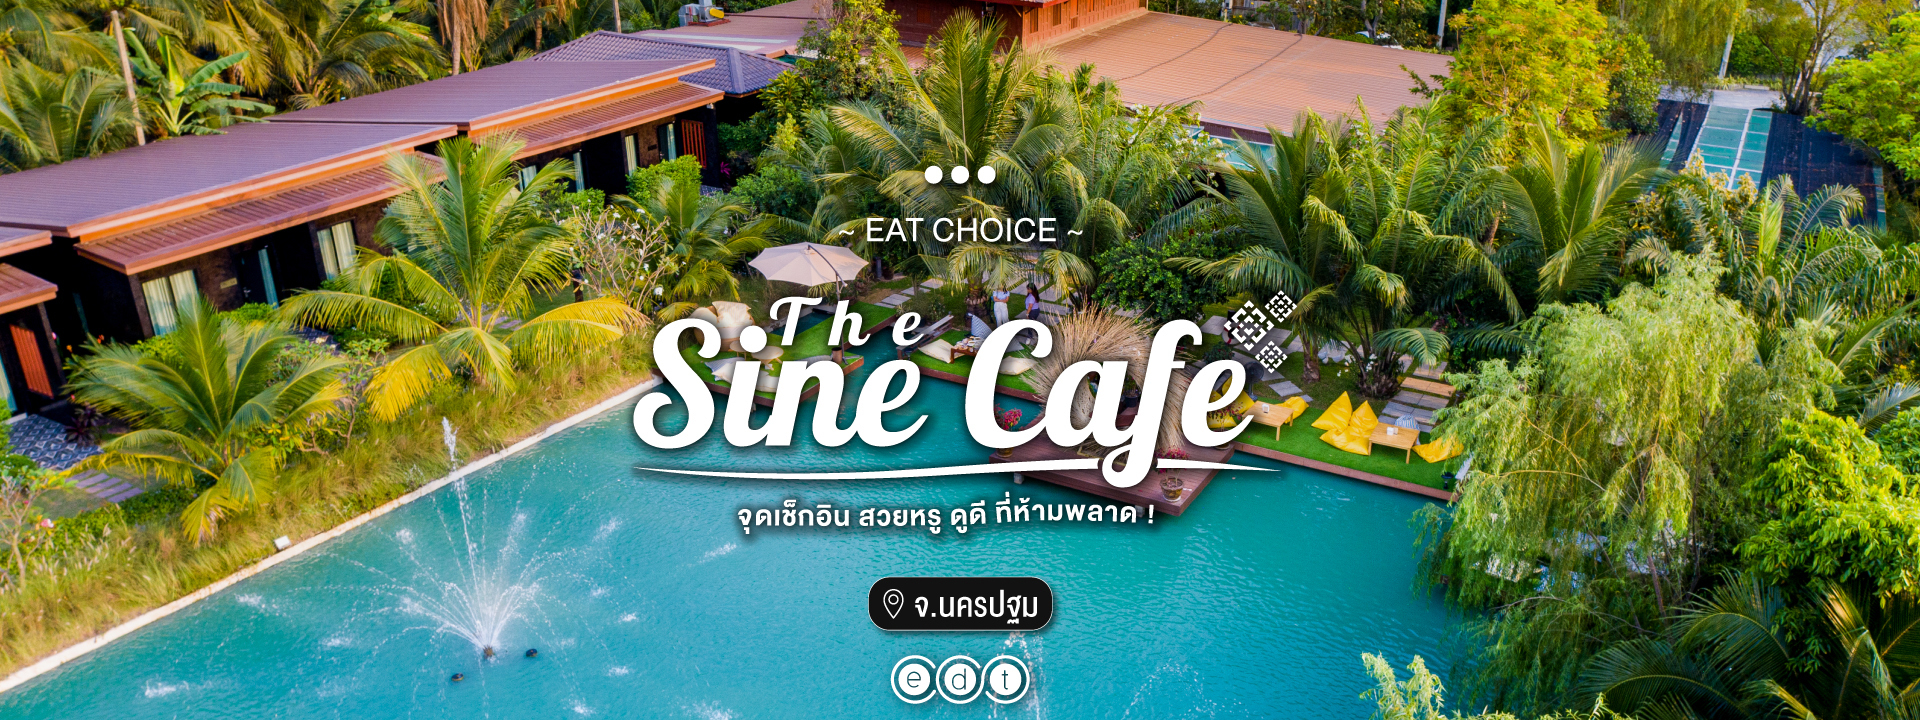 The Sine Cafe’ จุดเช็กอินย่านนครปฐม คาเฟ่สวย บรรยากาศปัง